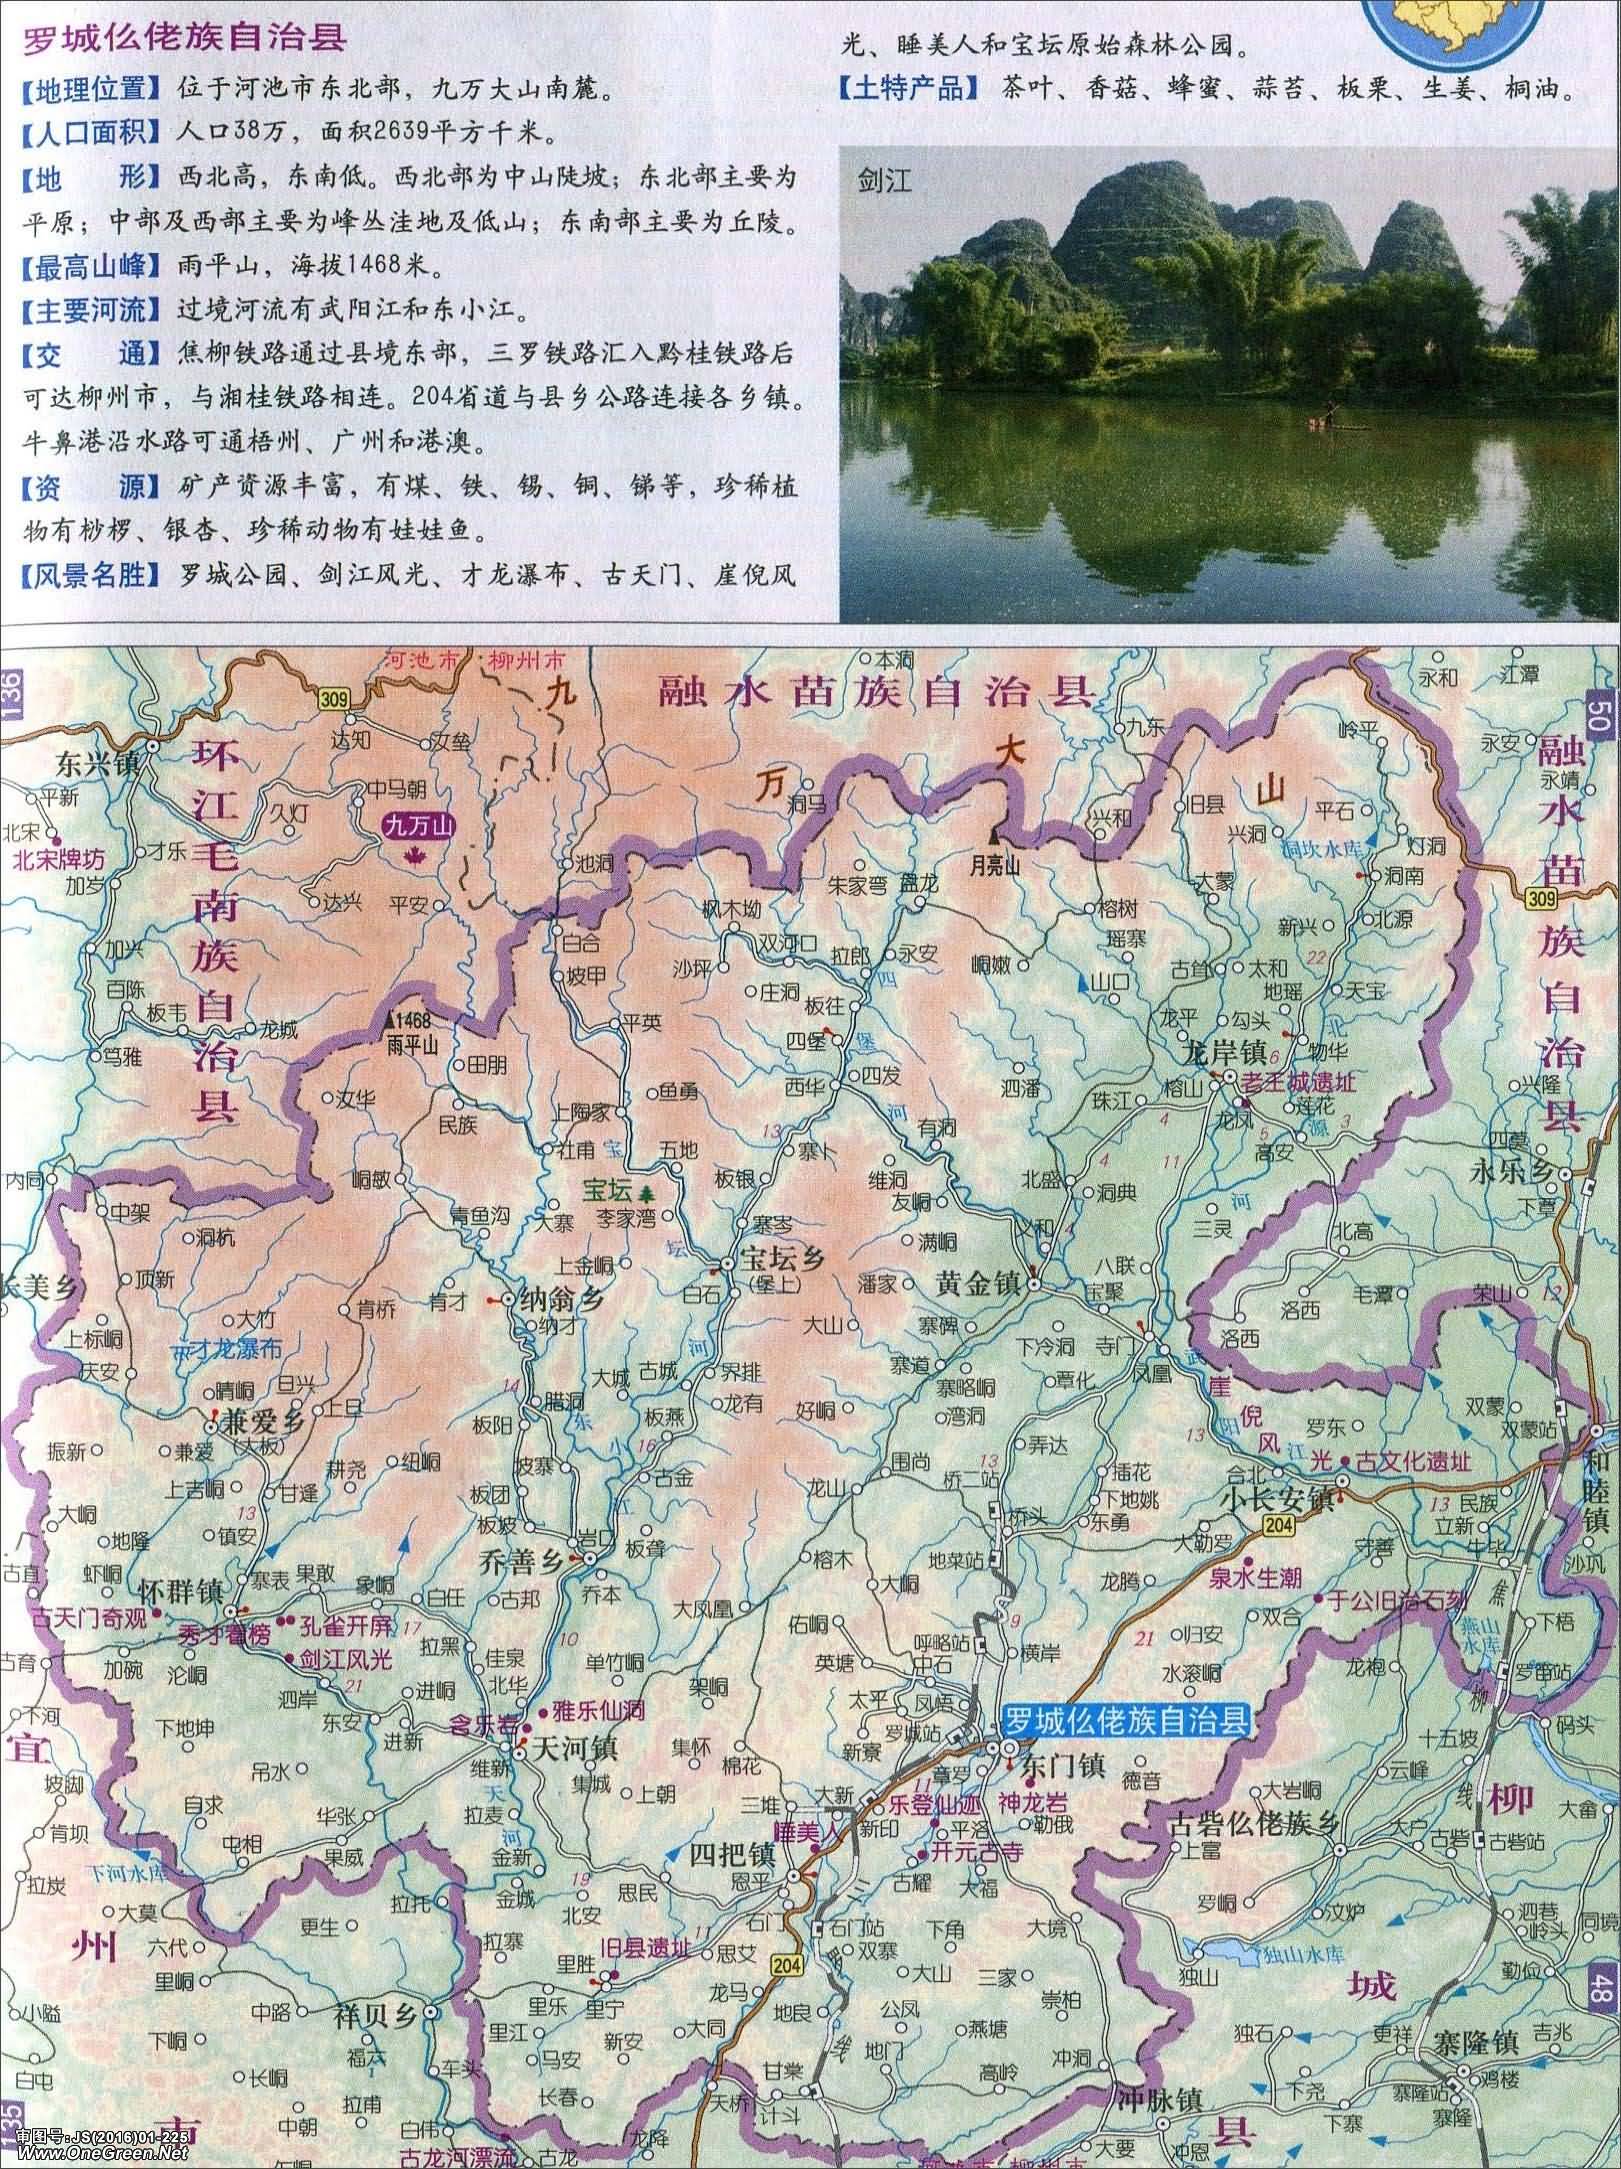 防城港  钦州  贵港  玉林  百色  河池  来宾  崇左 上一张地图: 金图片